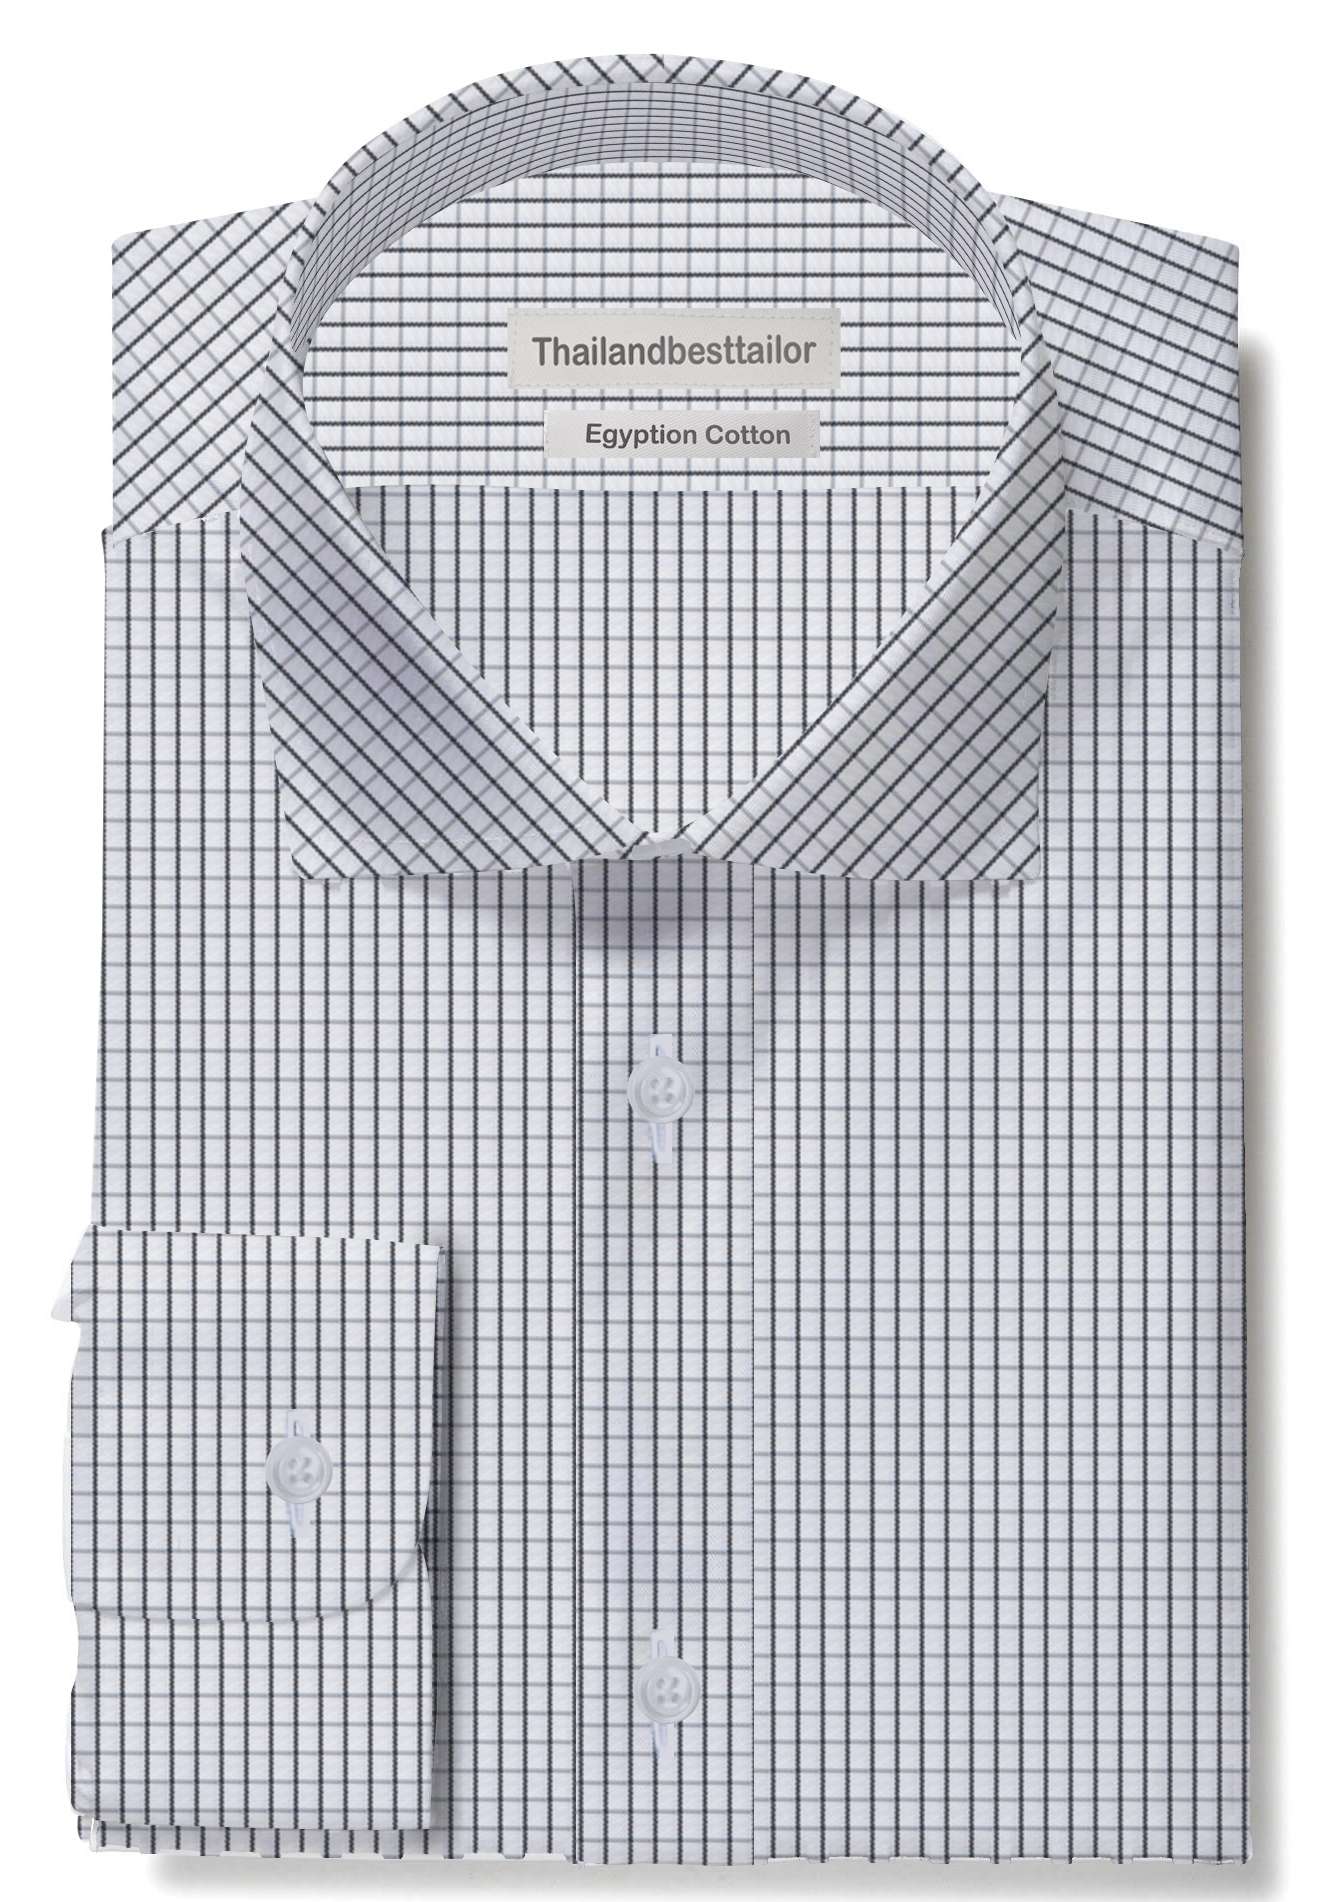 weg elke keer Gronden Long Sleeve Formal Check Shirts 100% Cotton Custom Made Shirt Online